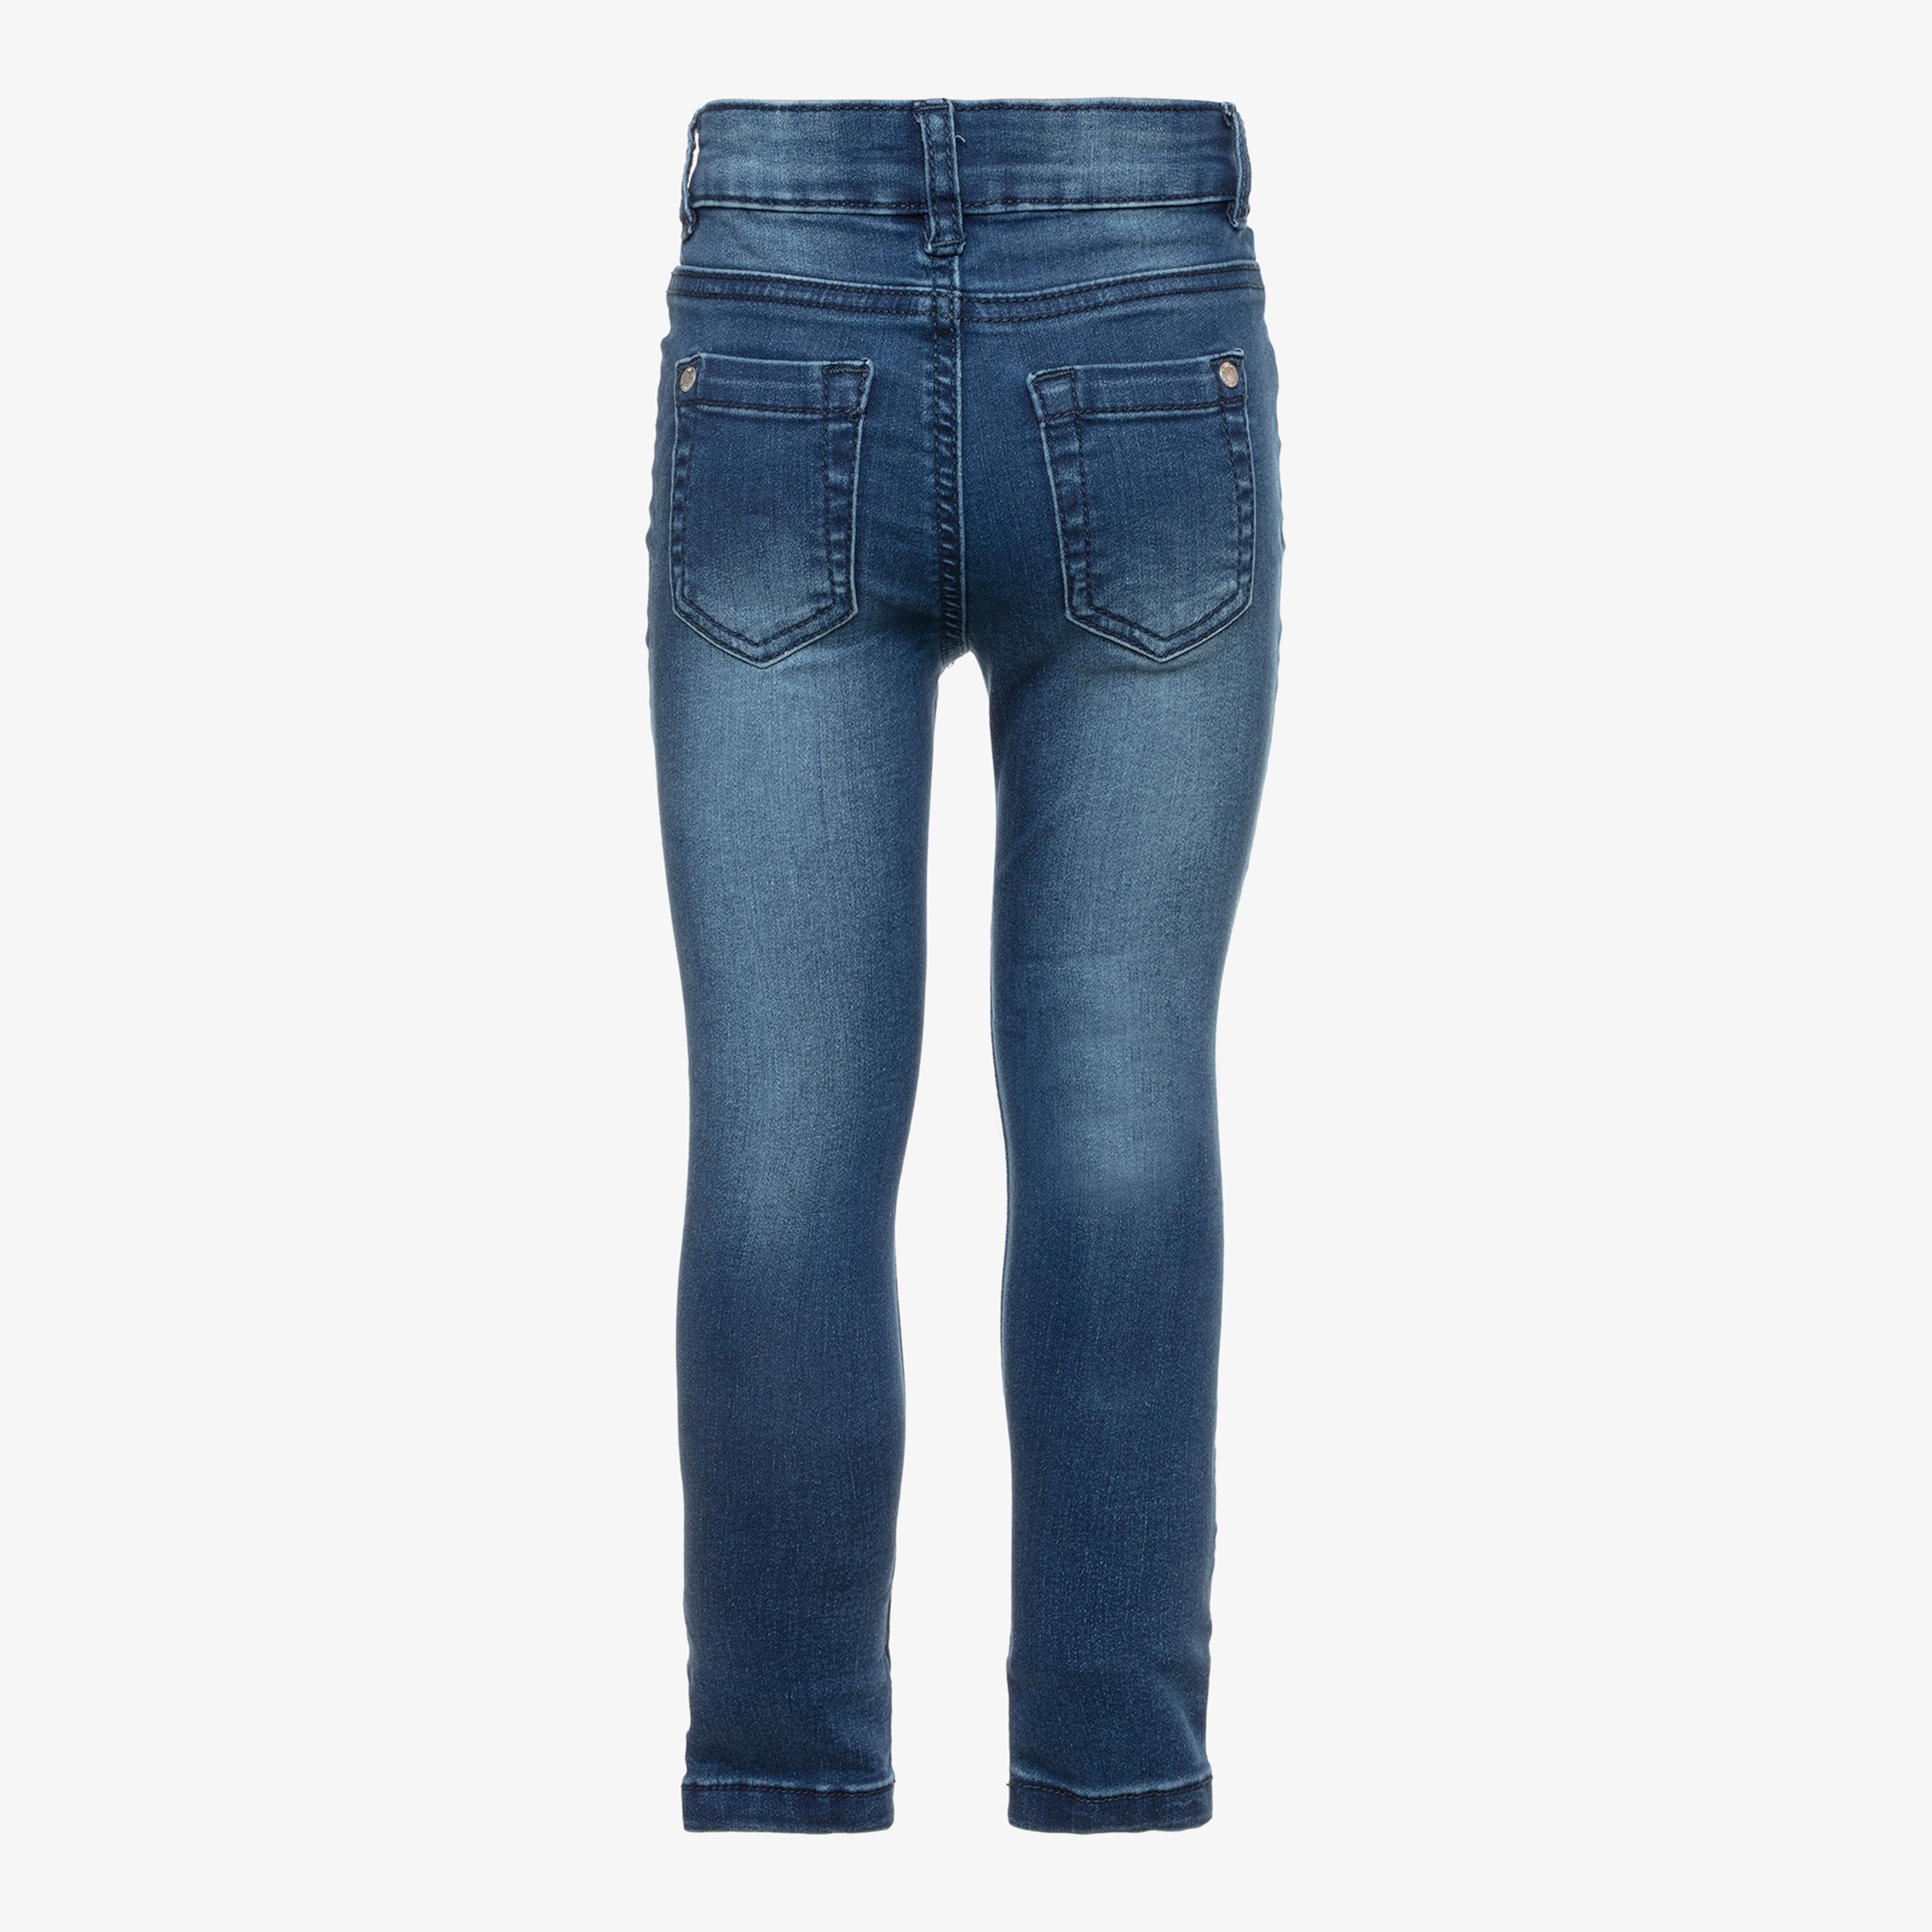 Ai Girl Meisjes Skinny Jeans Online Bestellen Scapino